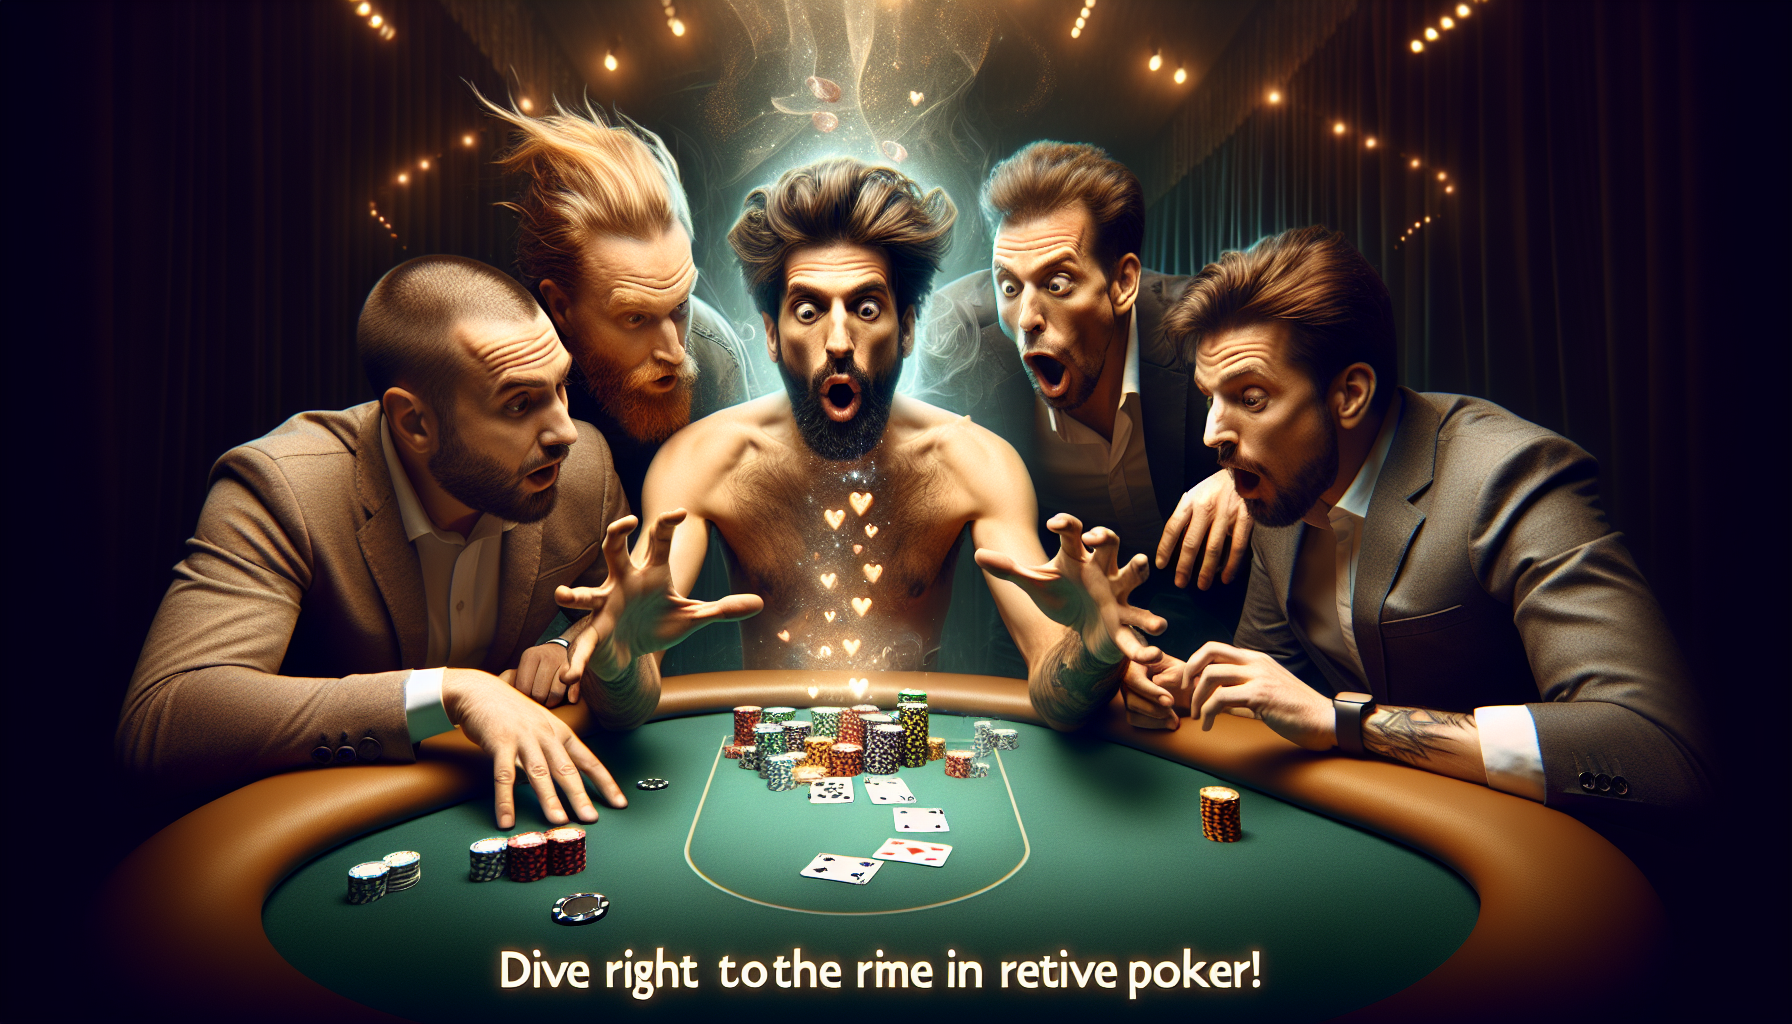 découvrez le poker en direct et plongez dans l'univers passionnant du jeu de cartes le plus populaire au monde avec notre plateforme de poker en direct.